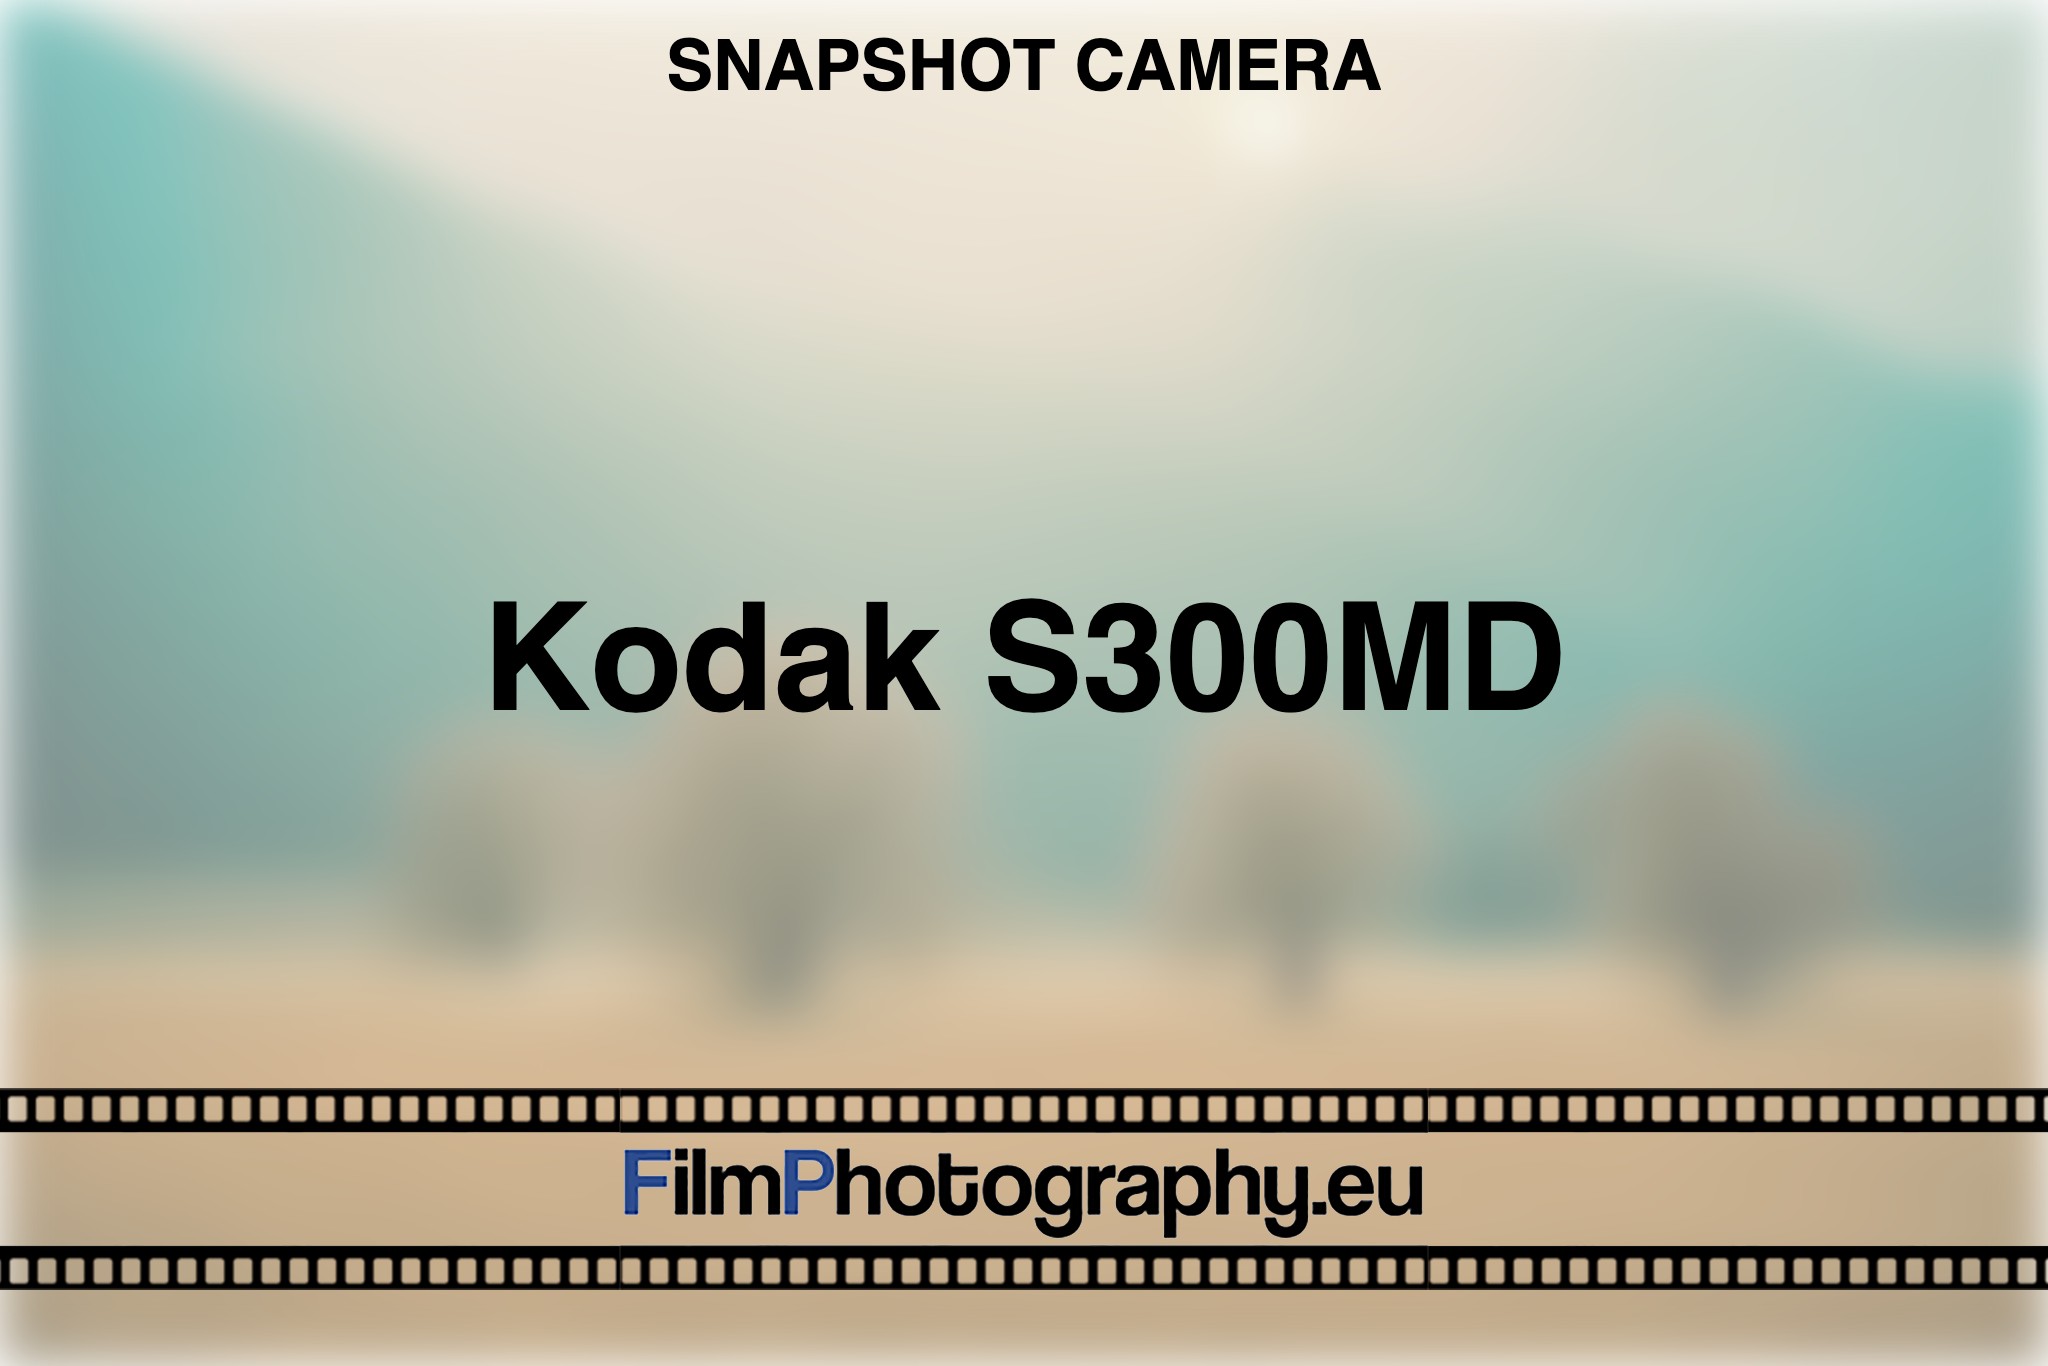 kodak-s300md-snapshot-camera-bnv